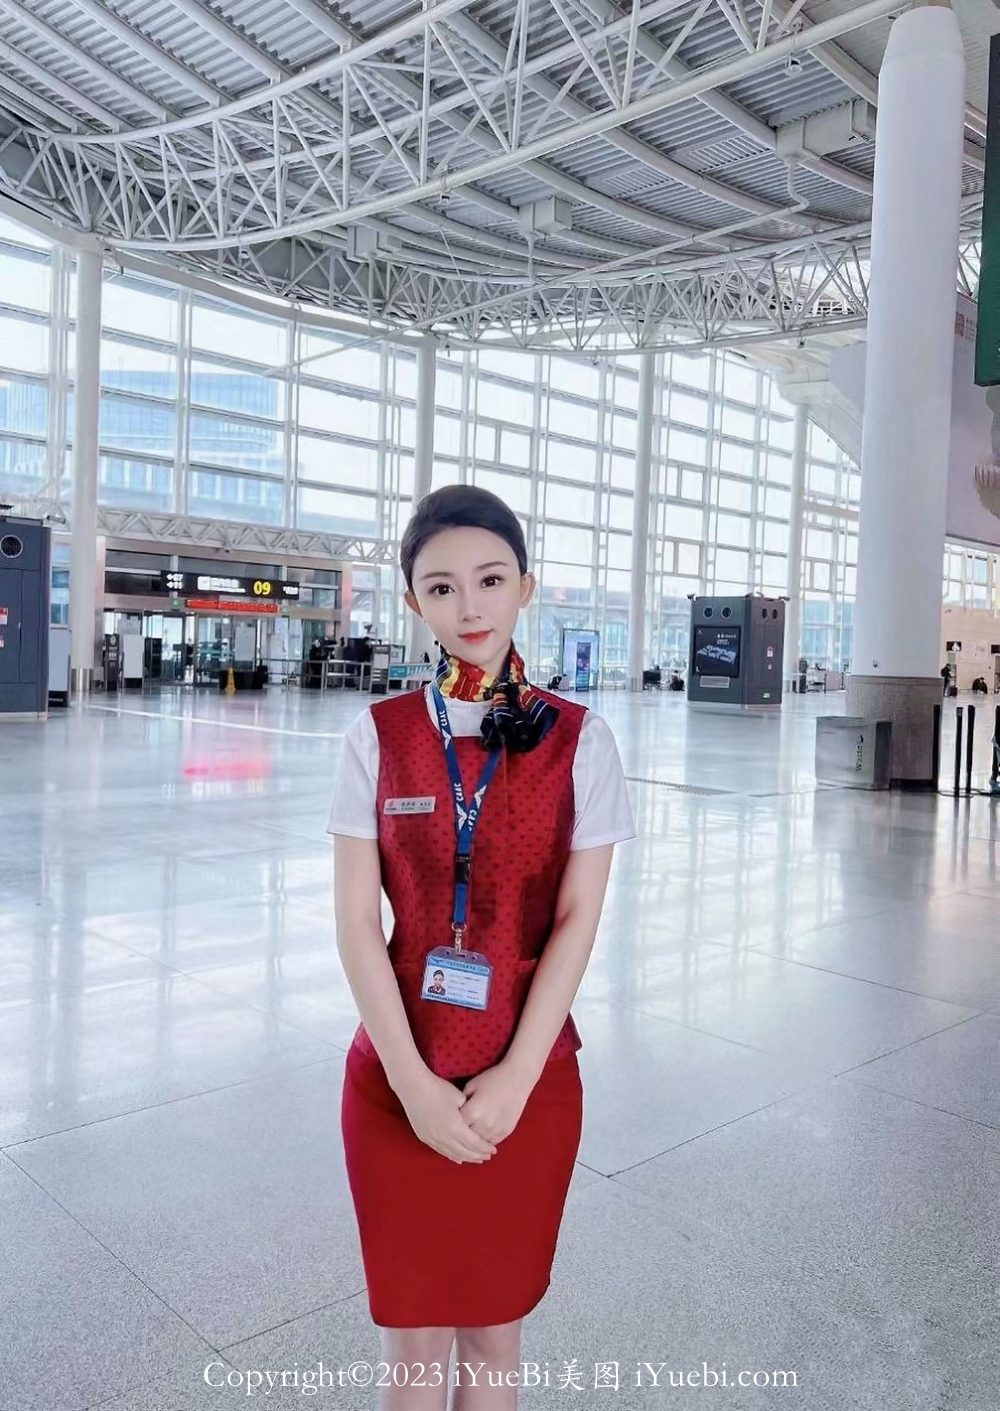 中国国际航空地勤空姐一枚